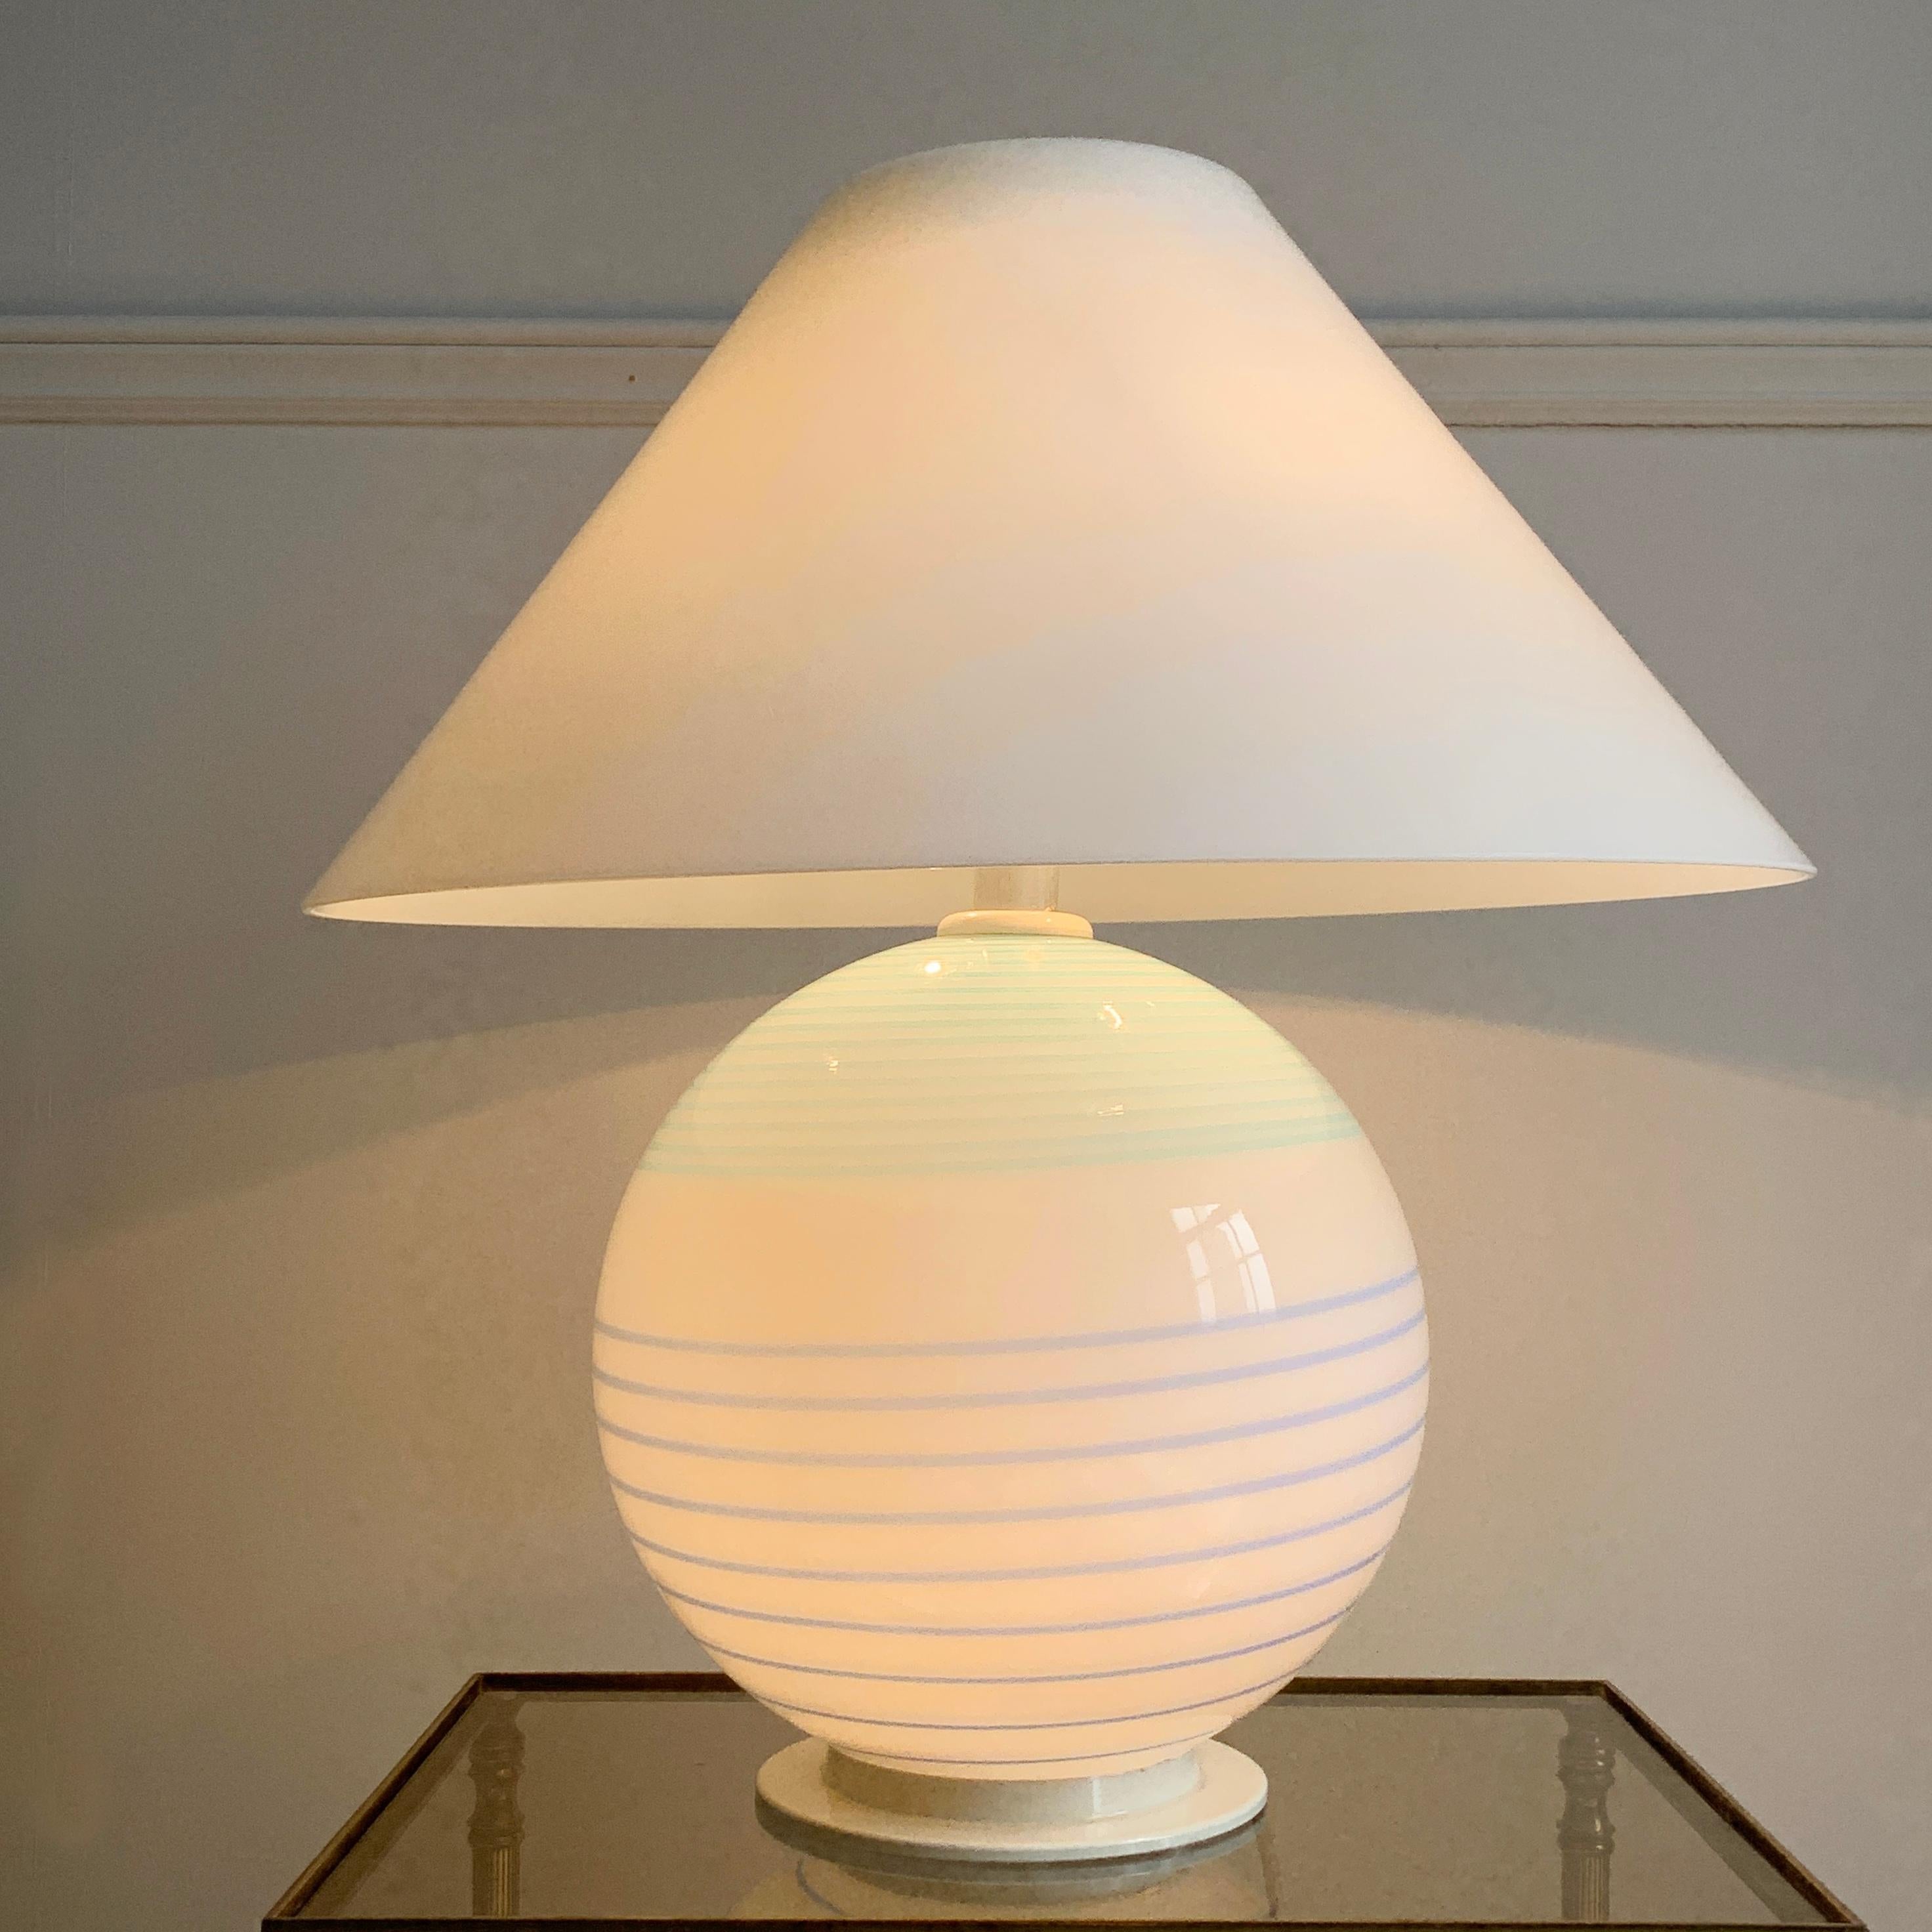 Atemberaubende Vetri Murano Lampe, aus den 1970er Jahren. Große Lampe aus mundgeblasenem Murano-Glas, mit Glasschirm. Ein wirklich schönes Stück im Vintage-Stil, das sowohl oben, wo sich zwei Lampenfassungen befinden, als auch im Inneren des